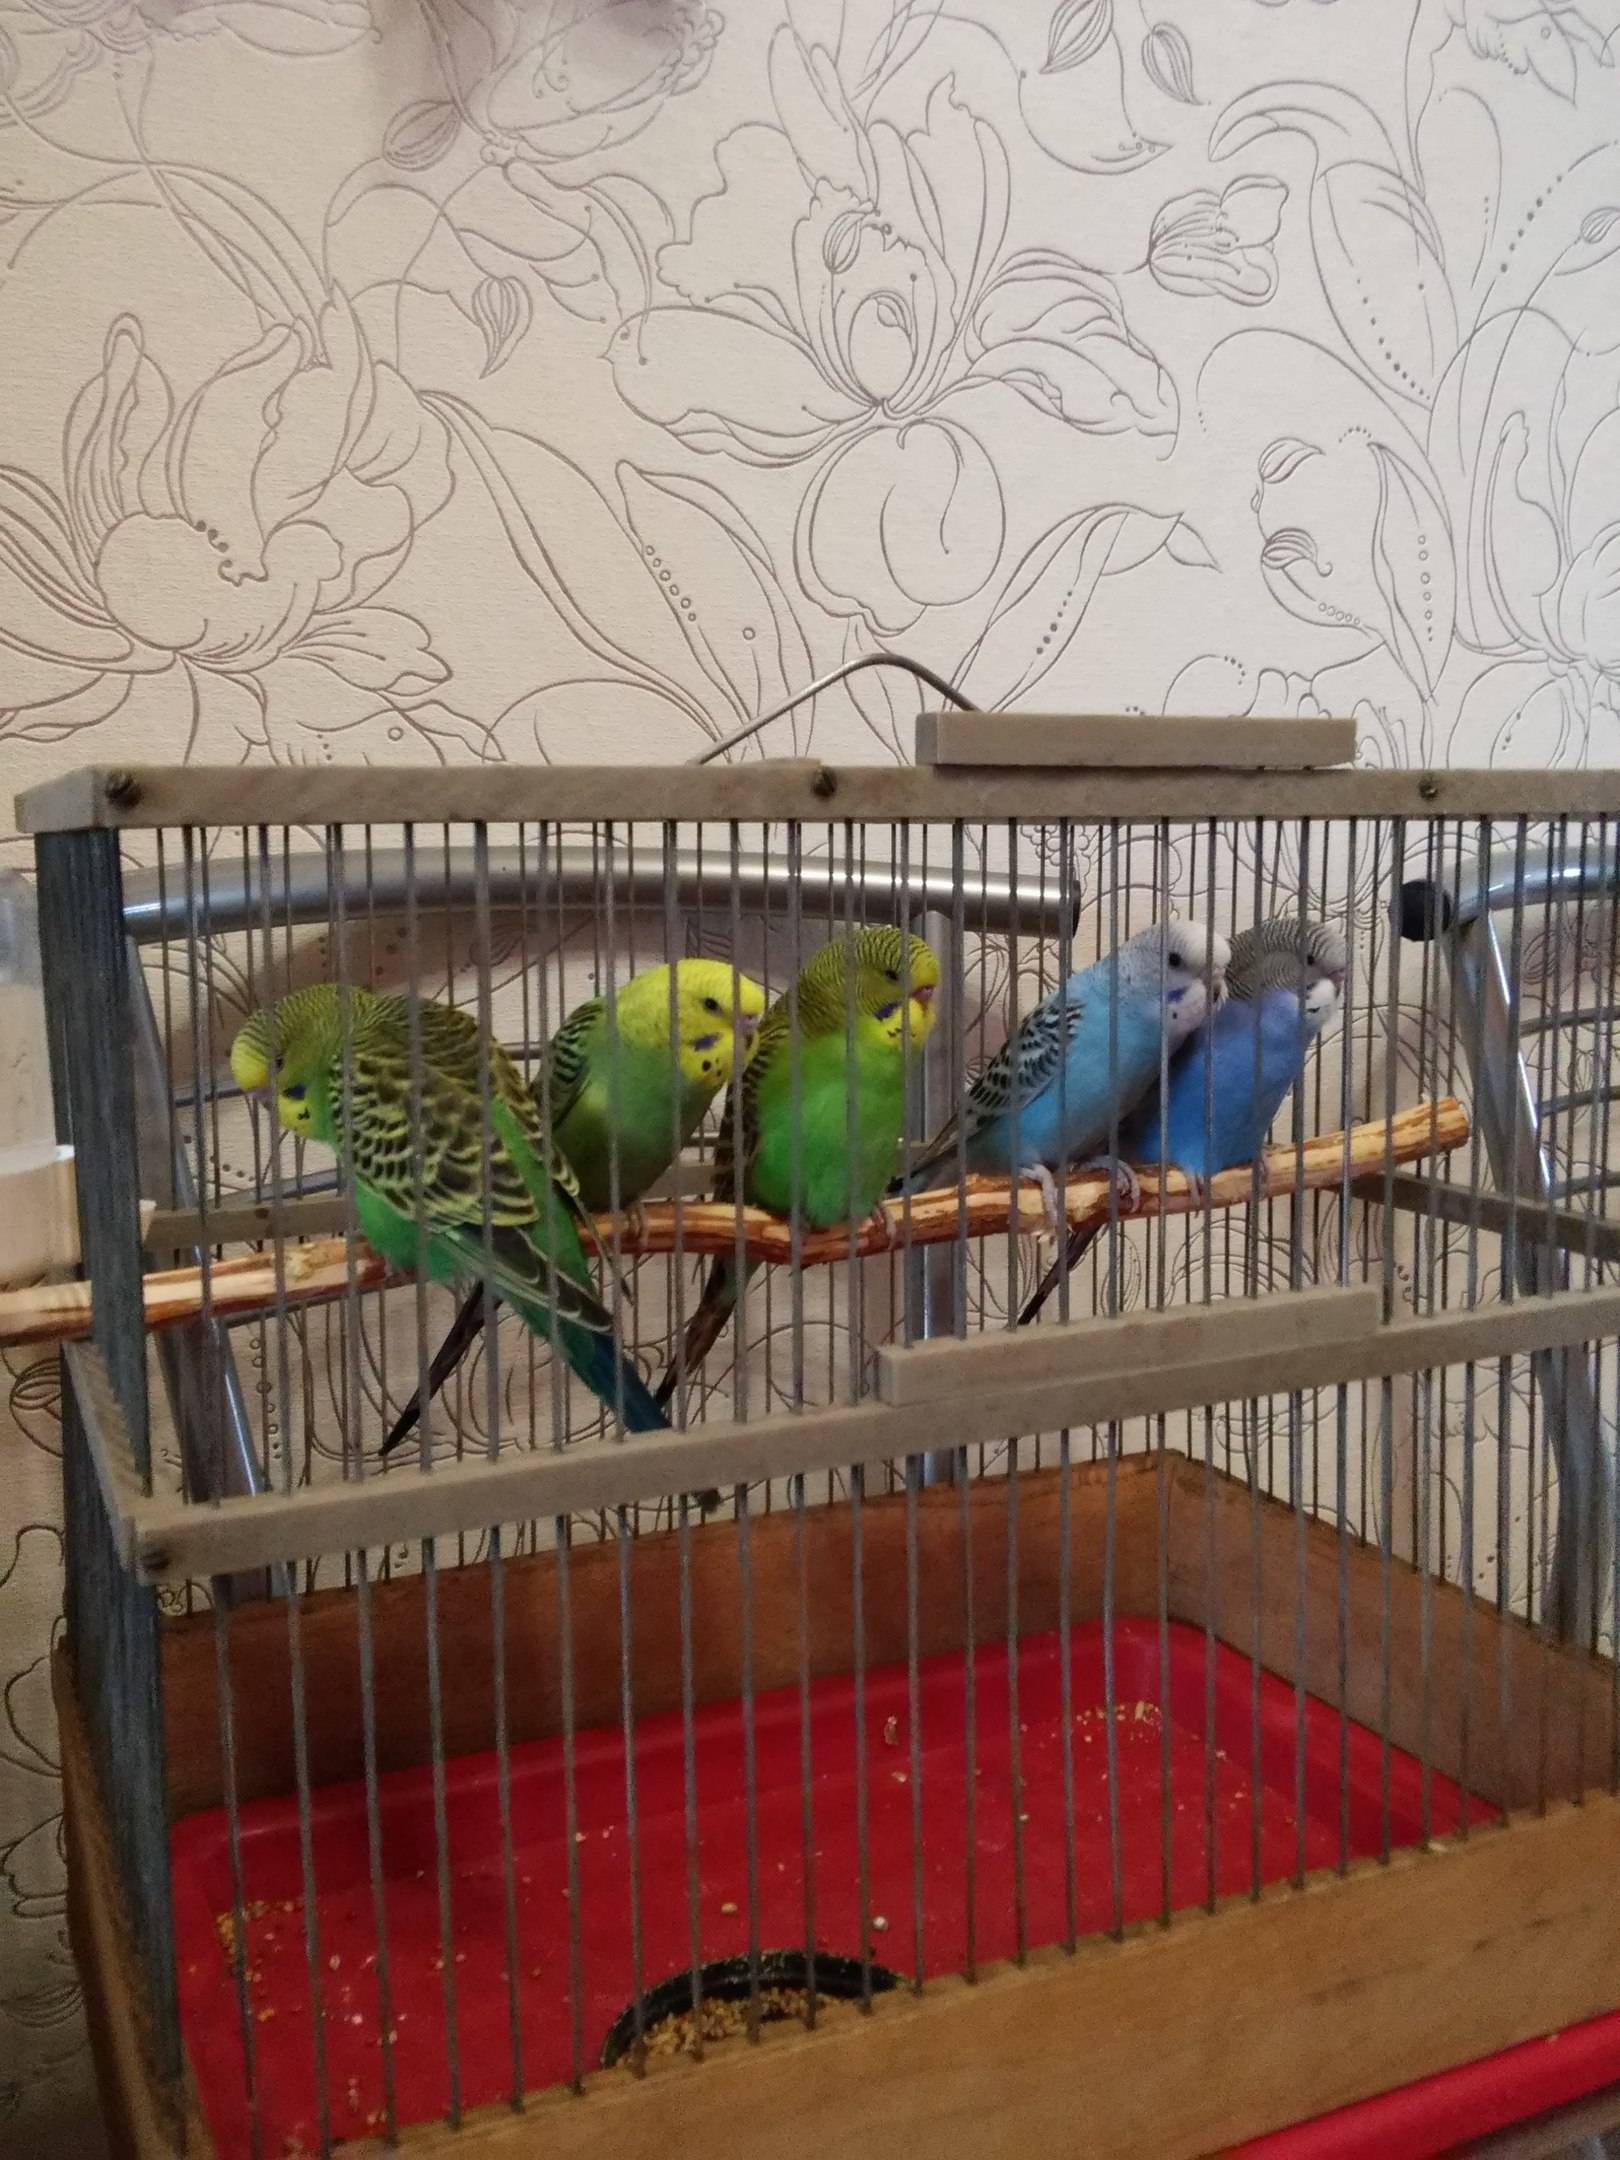 Разведение попугаев в домашних условиях как бизнес - идея бизнеса